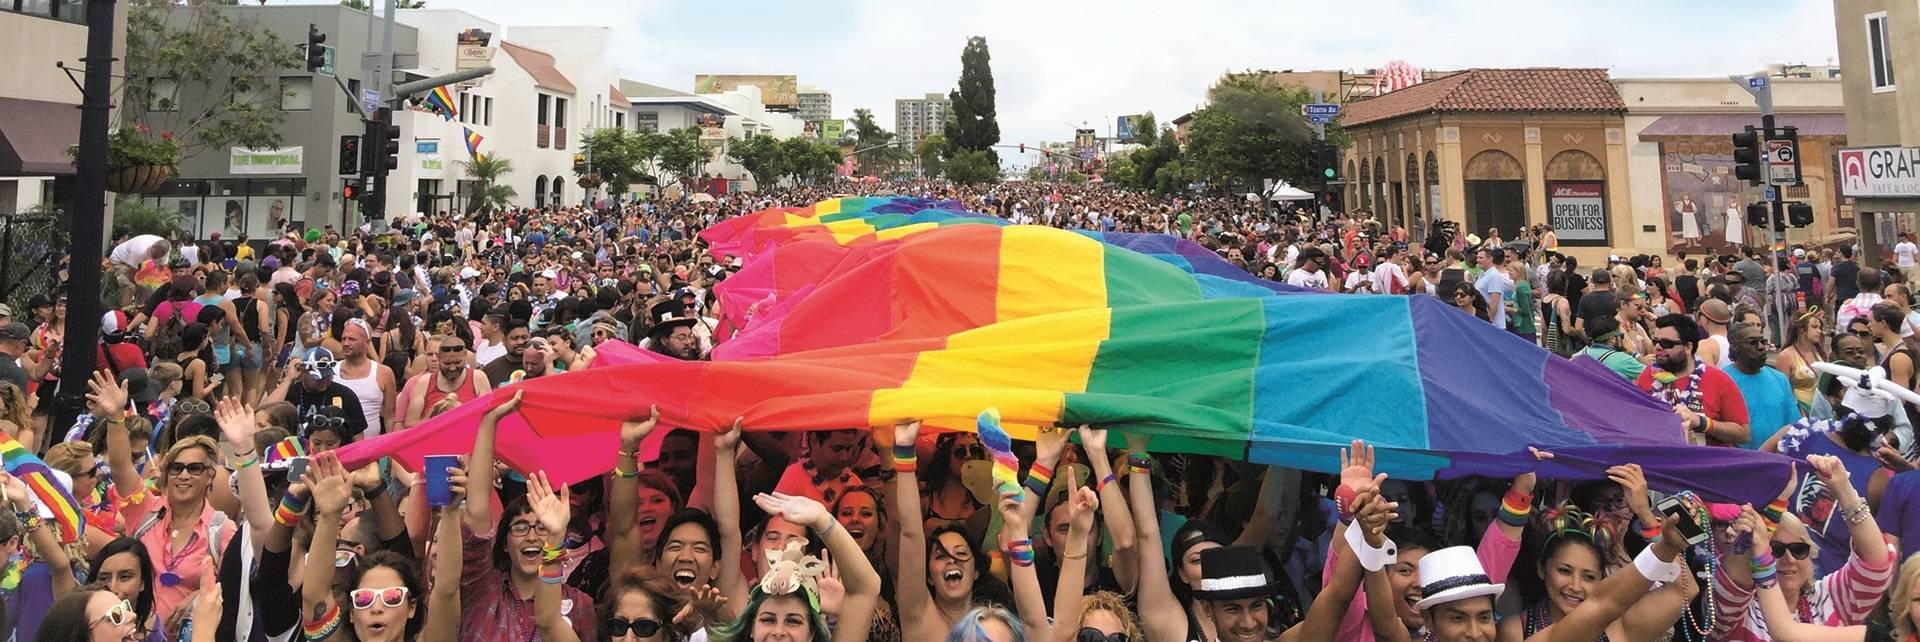 gay pride san diego 2019 events